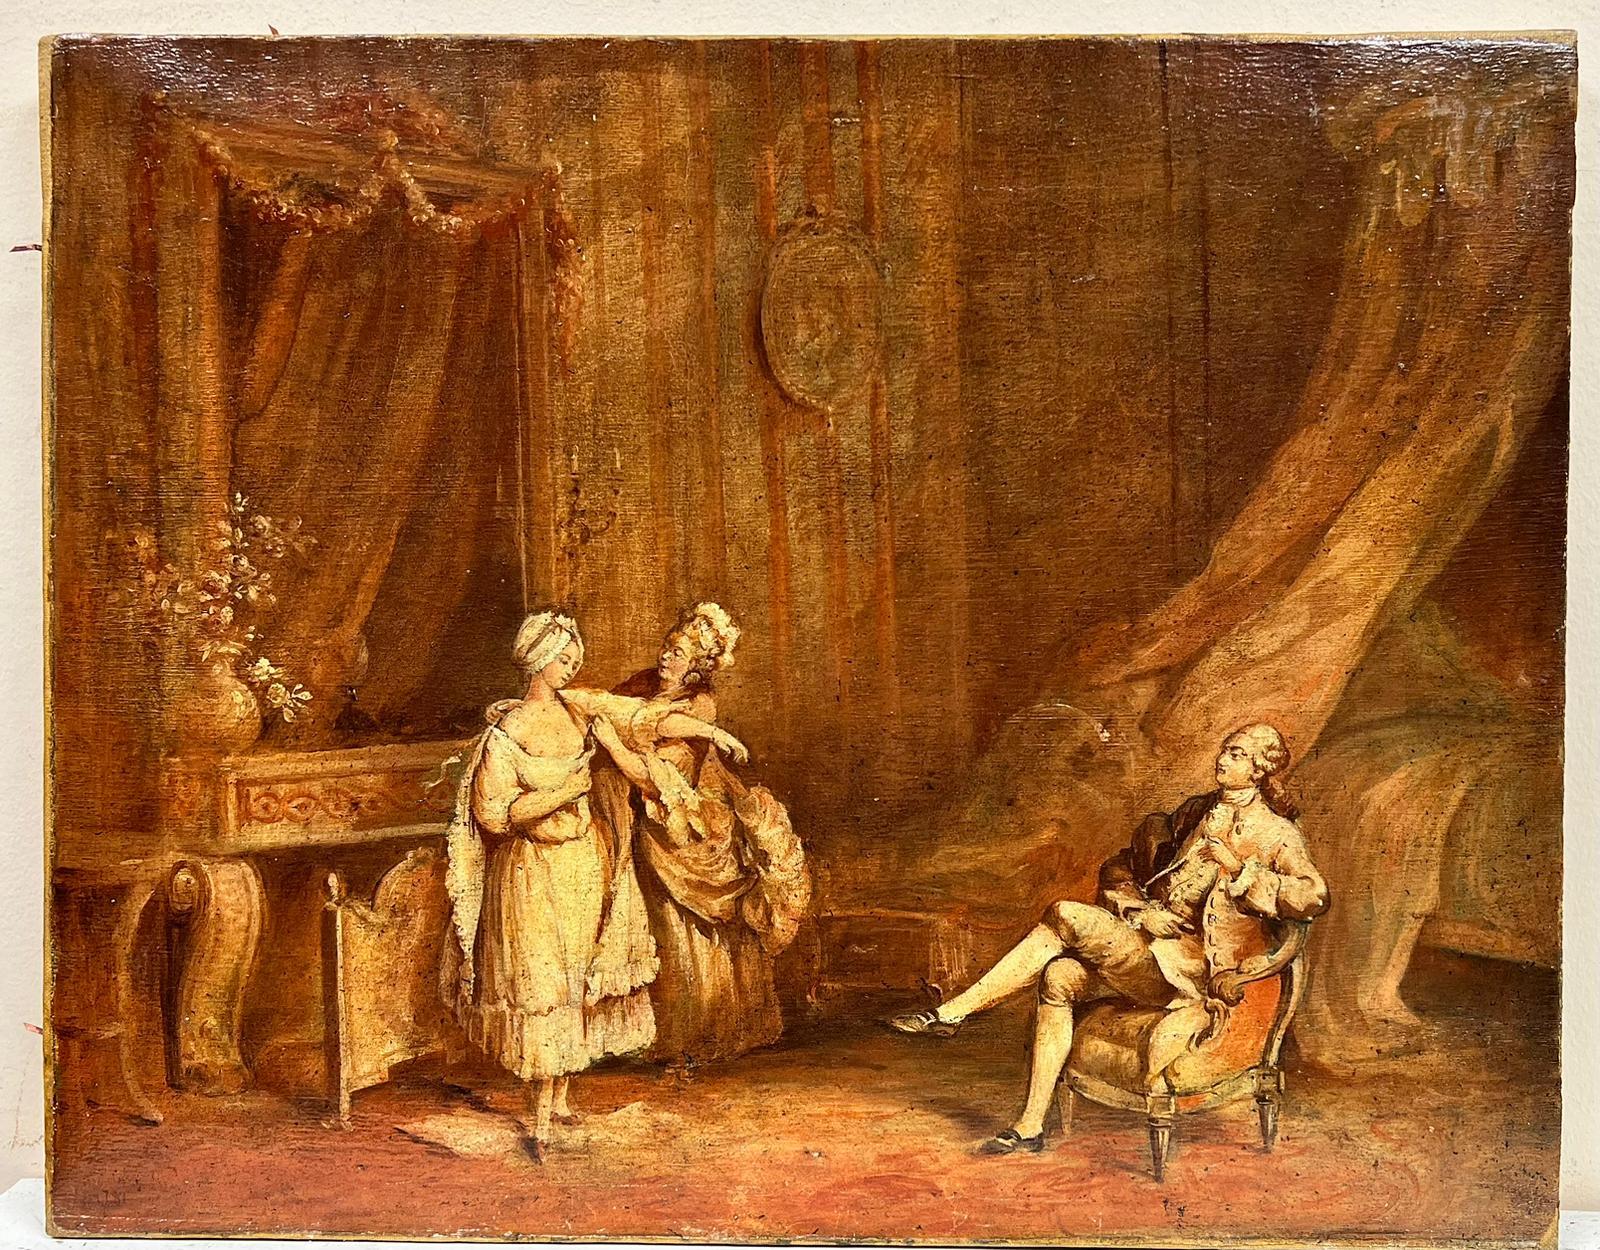 Peinture à l'huile française des années 1800 - Élégante période rococo - Figures d'intérieur - habillage de la dame - Painting de French Rococo